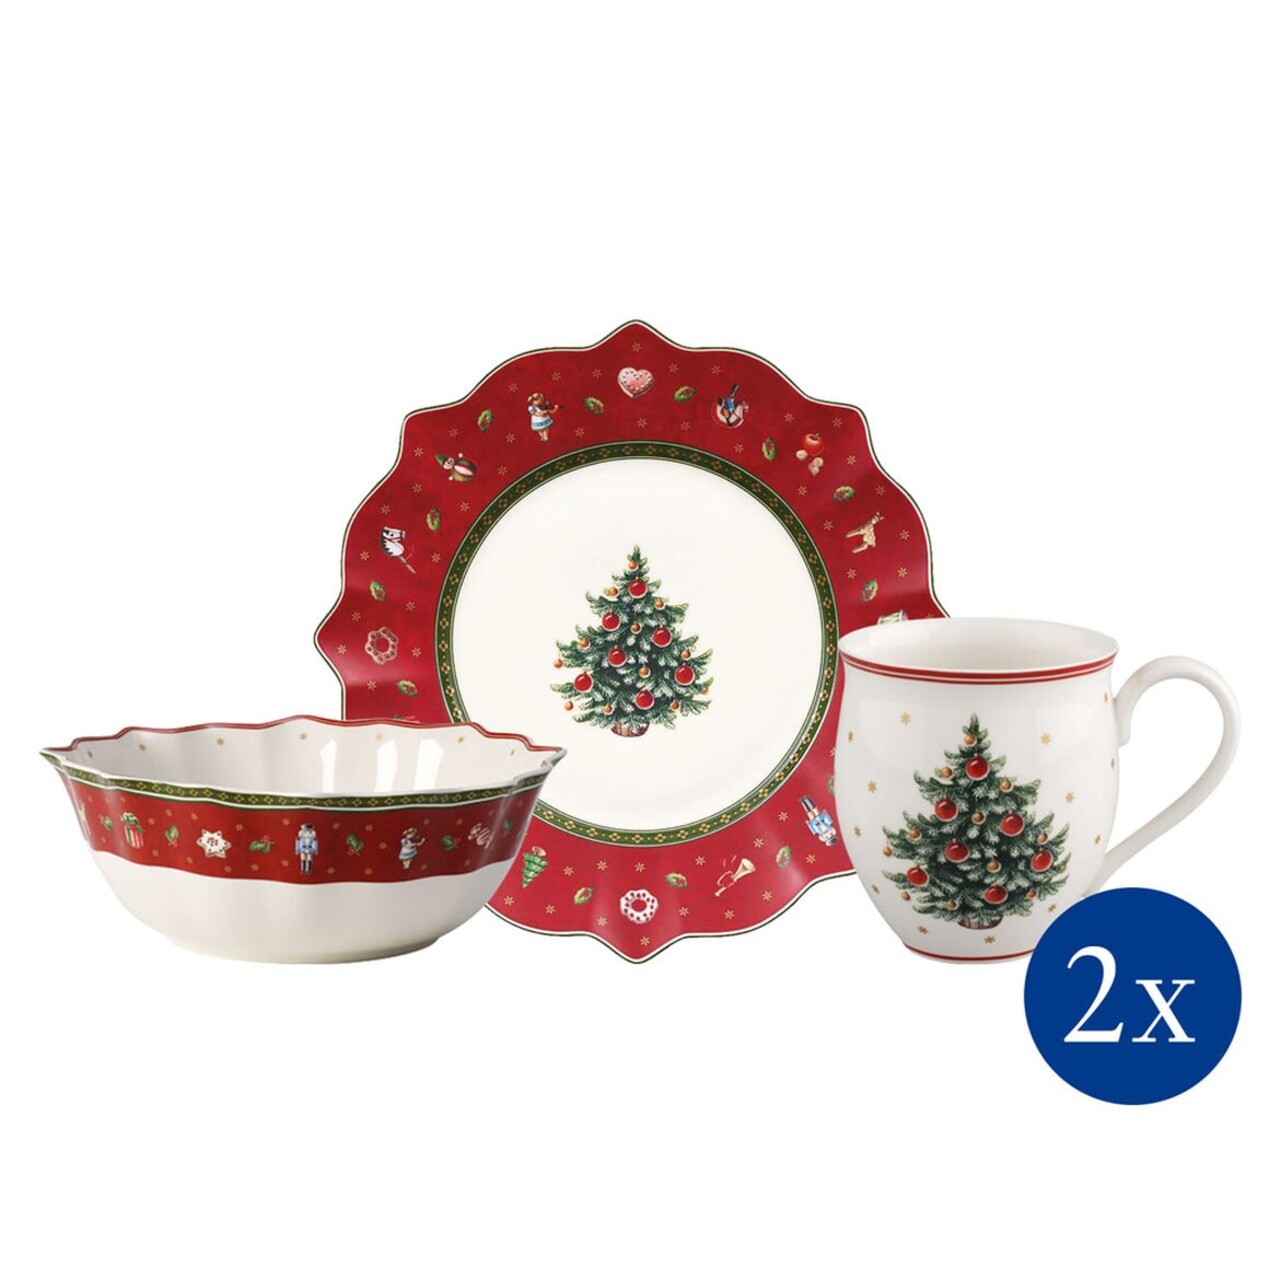 Piros-fehér porcelán karácsonyi étkészlet 6 db-os - Villeroy & Boch